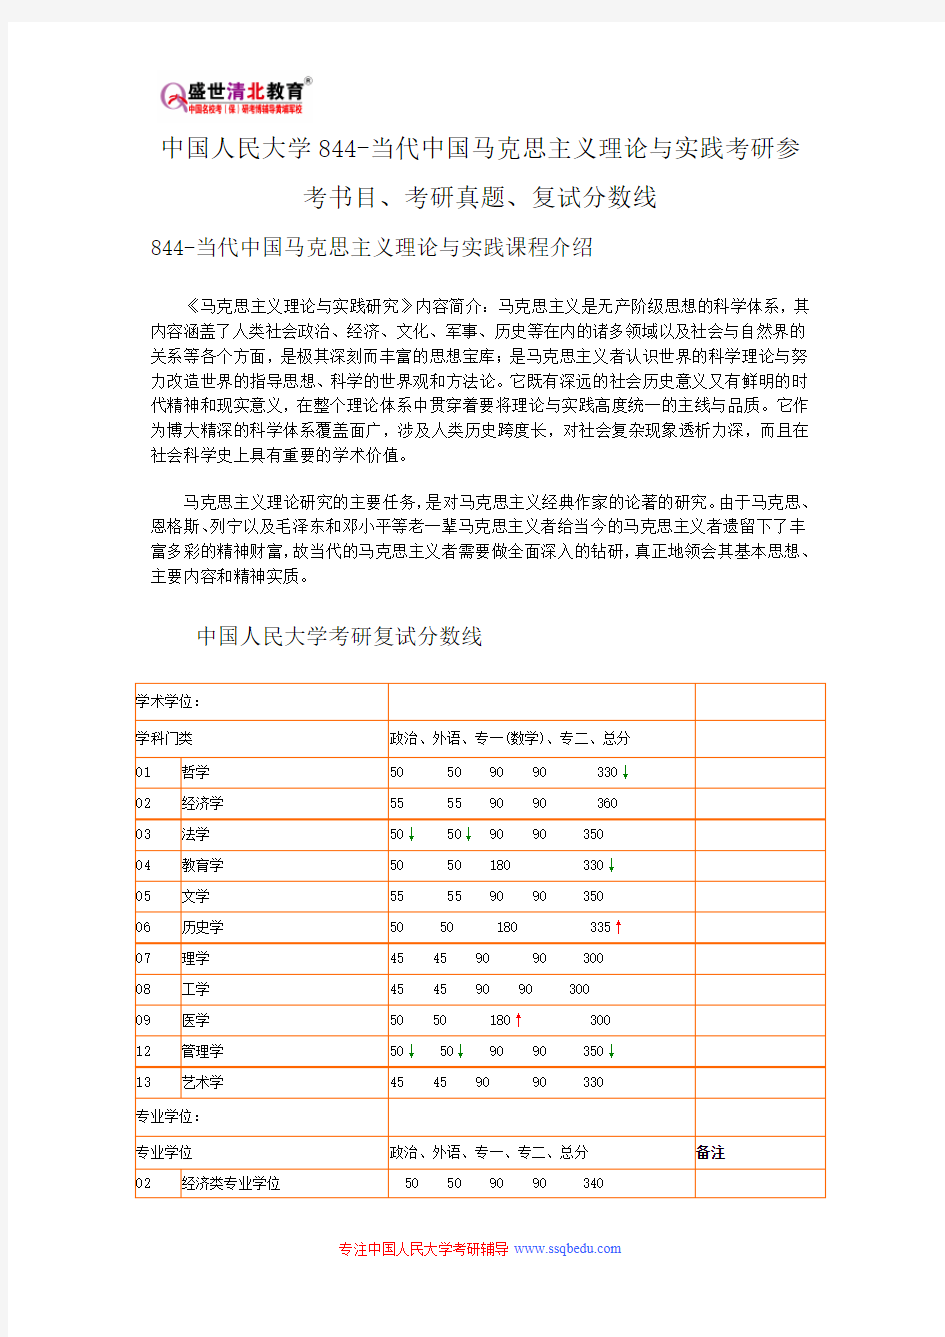 中国人民大学844-当代中国马克思主义理论与实践考研参考书目、考研真题、复试分数线